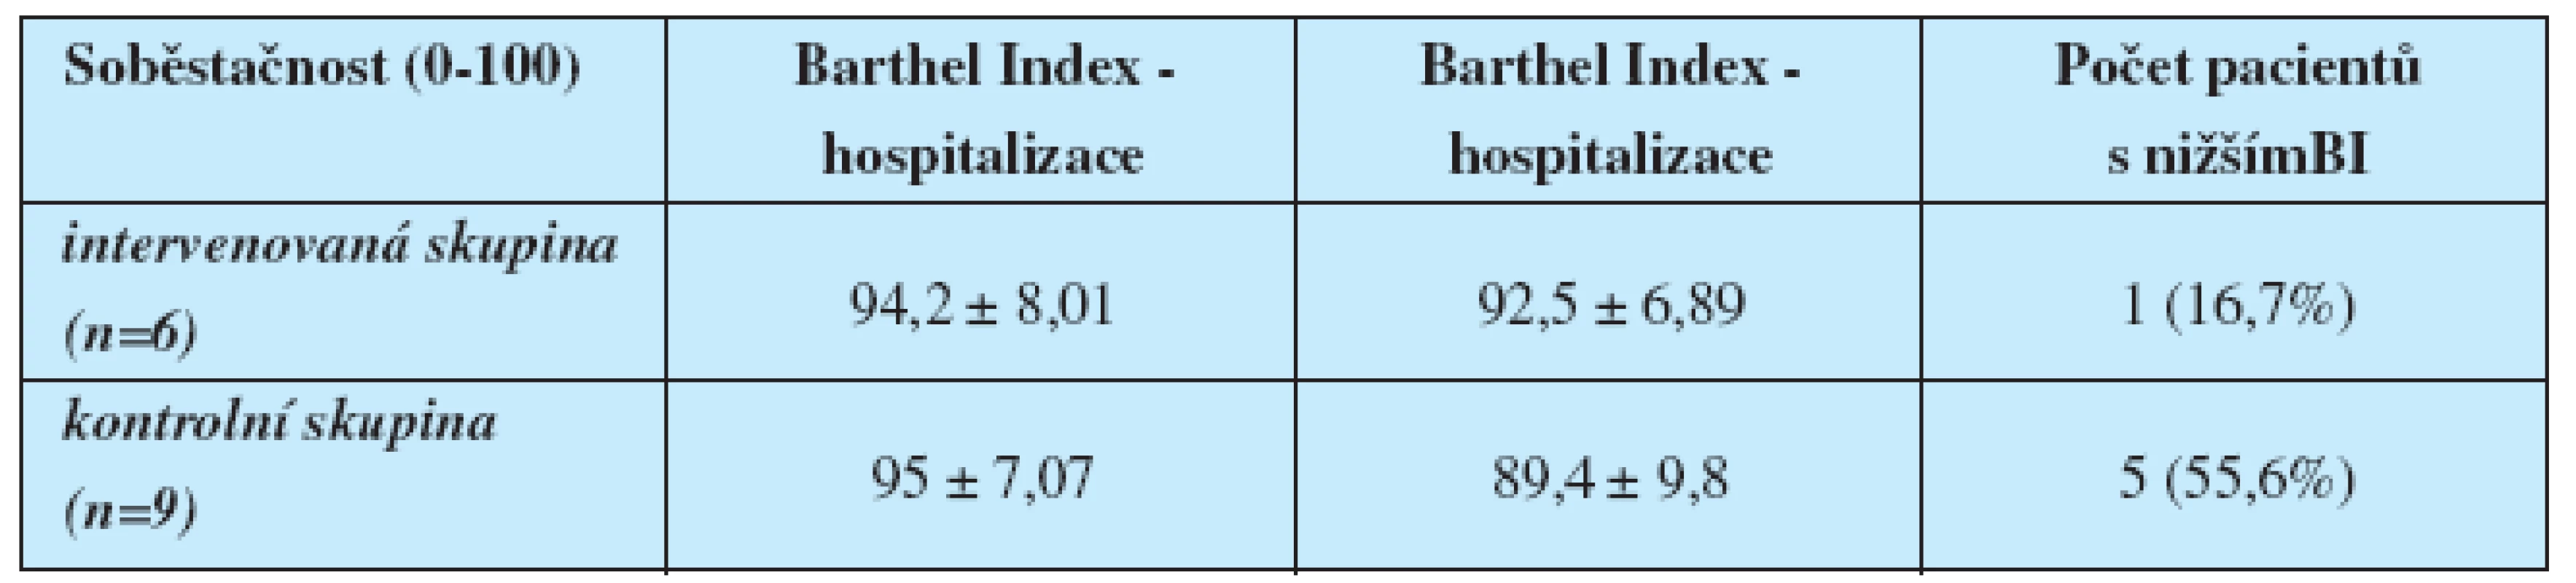 Porovnání Barthelova indexu soběstačnosti dle zařazení pacienta ve skupině